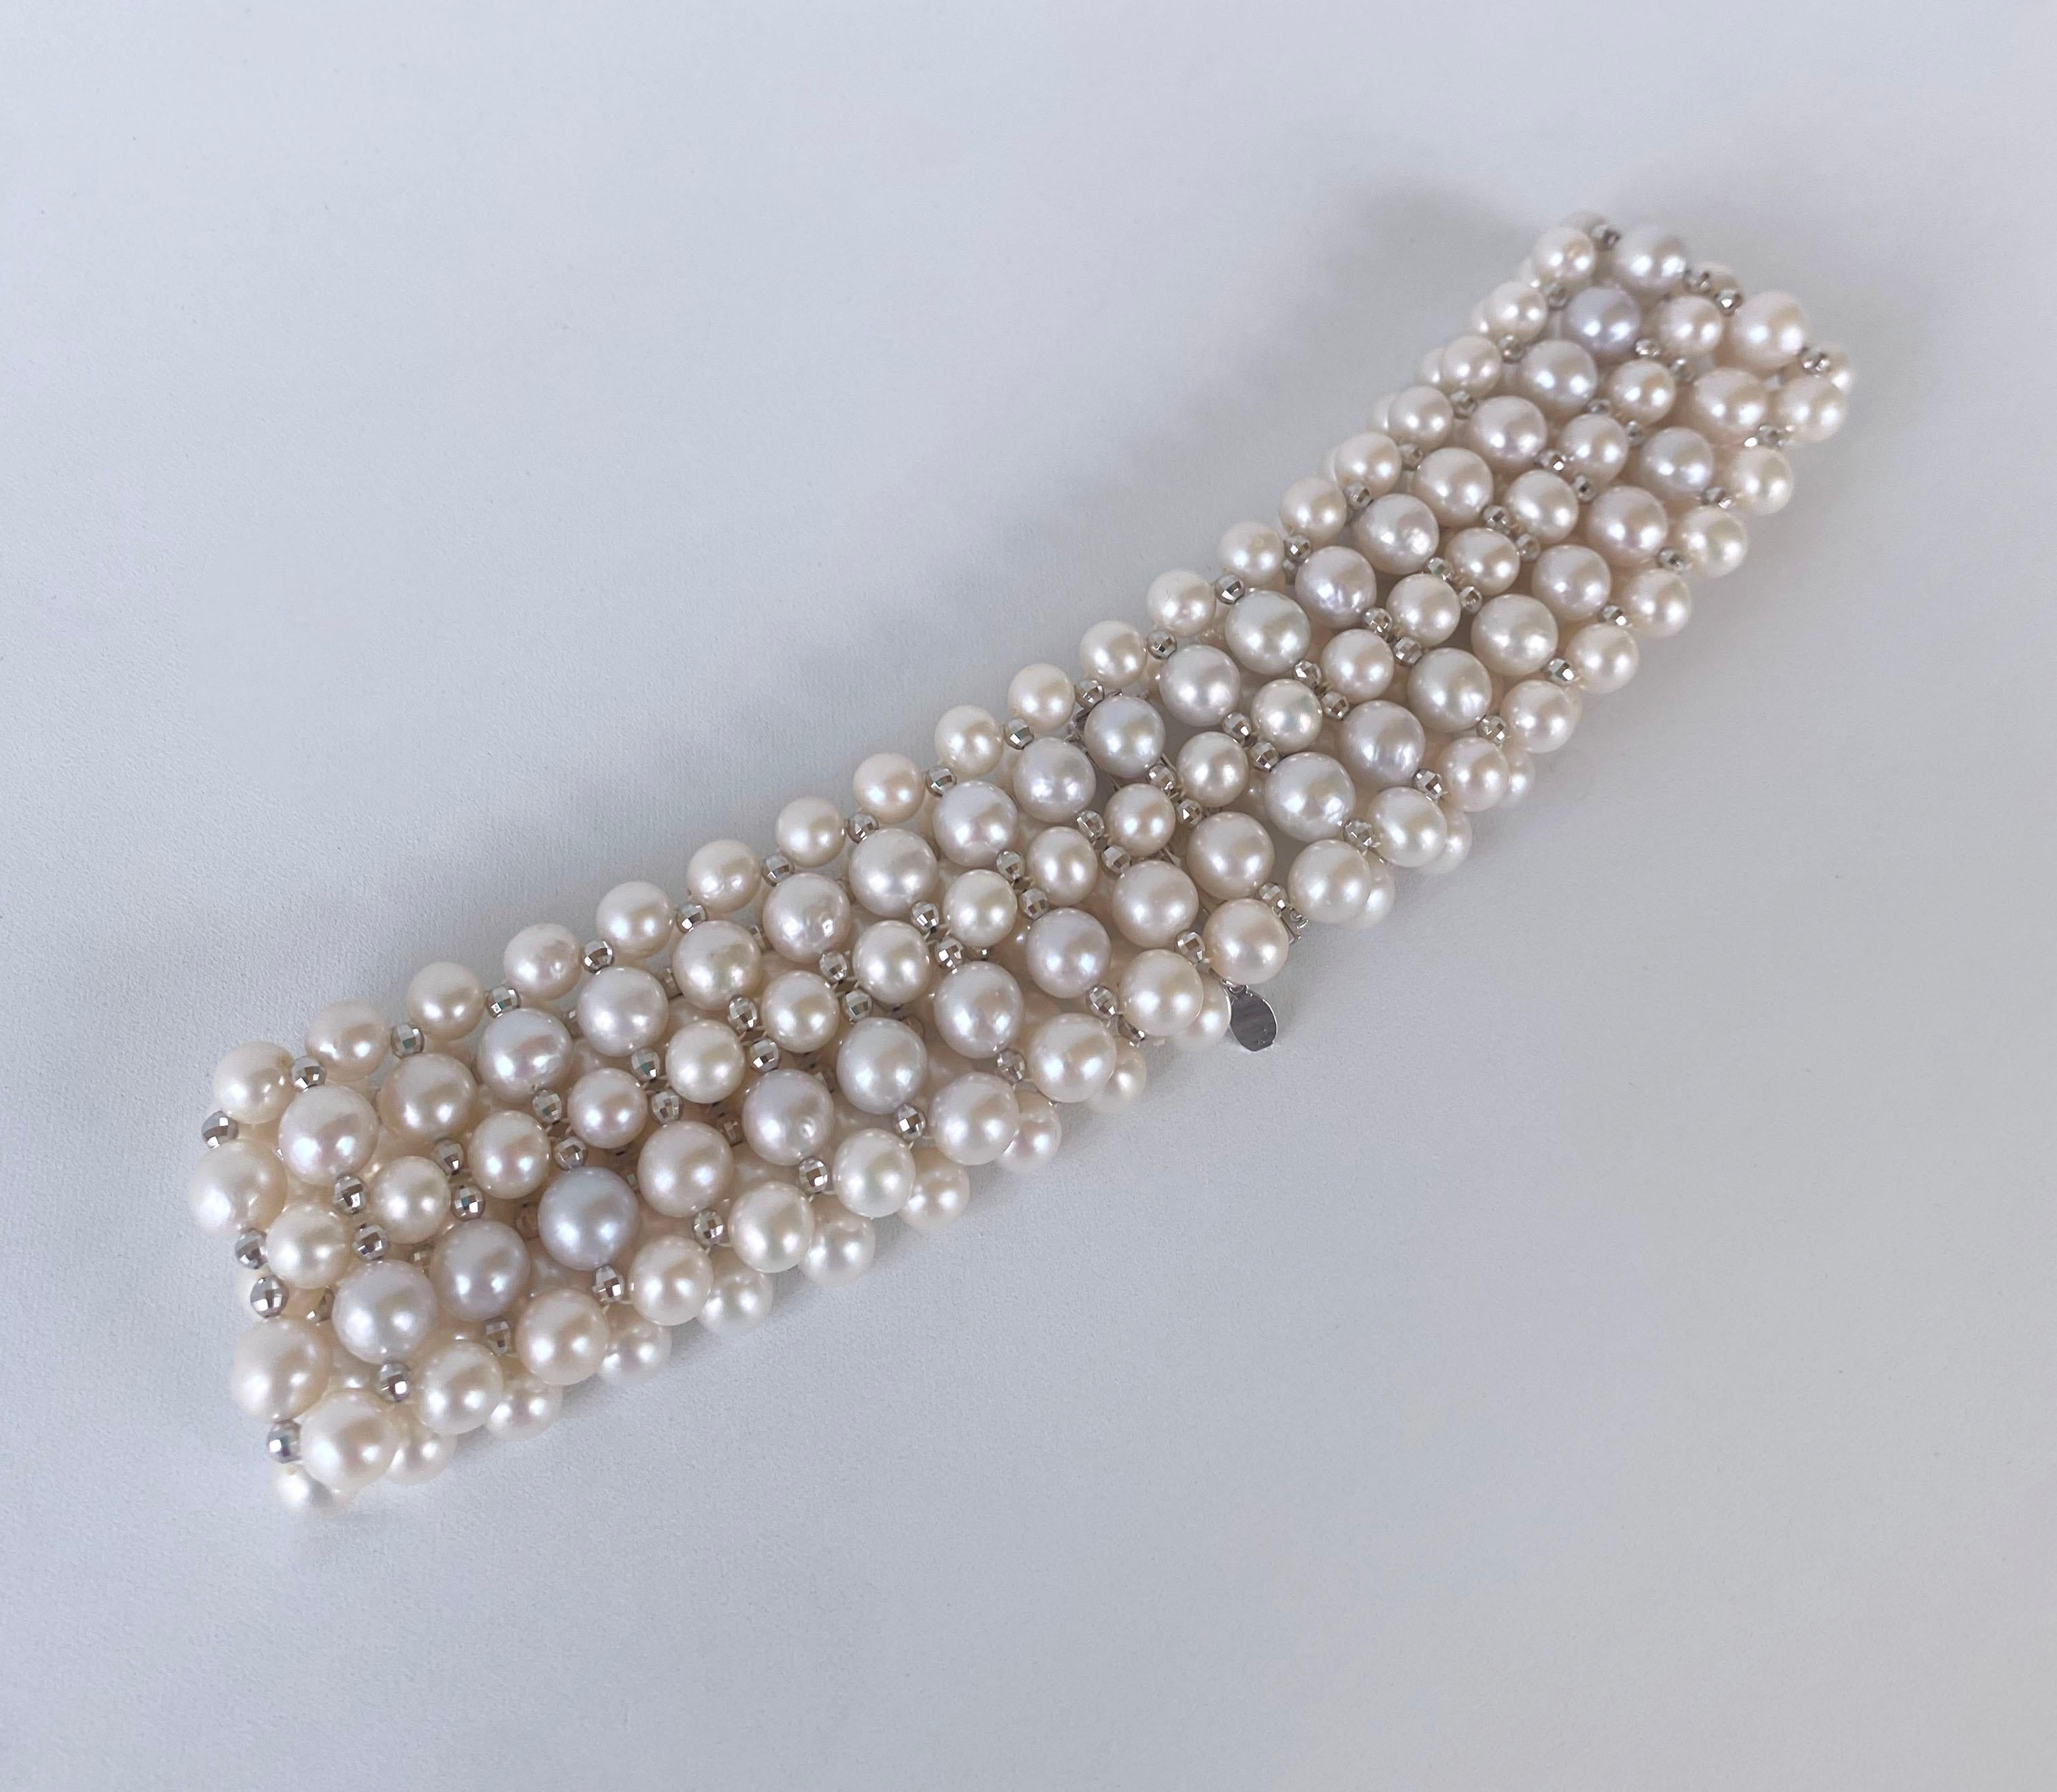 Dieses wunderschöne Collier besteht aus hochglänzenden weißen Perlen, die einen wunderbaren Schimmer haben und zu einem wunderschönen Design verwoben sind. Facettierte, weißvergoldete Silberperlen sind zwischen den Perlen verwoben und verleihen der